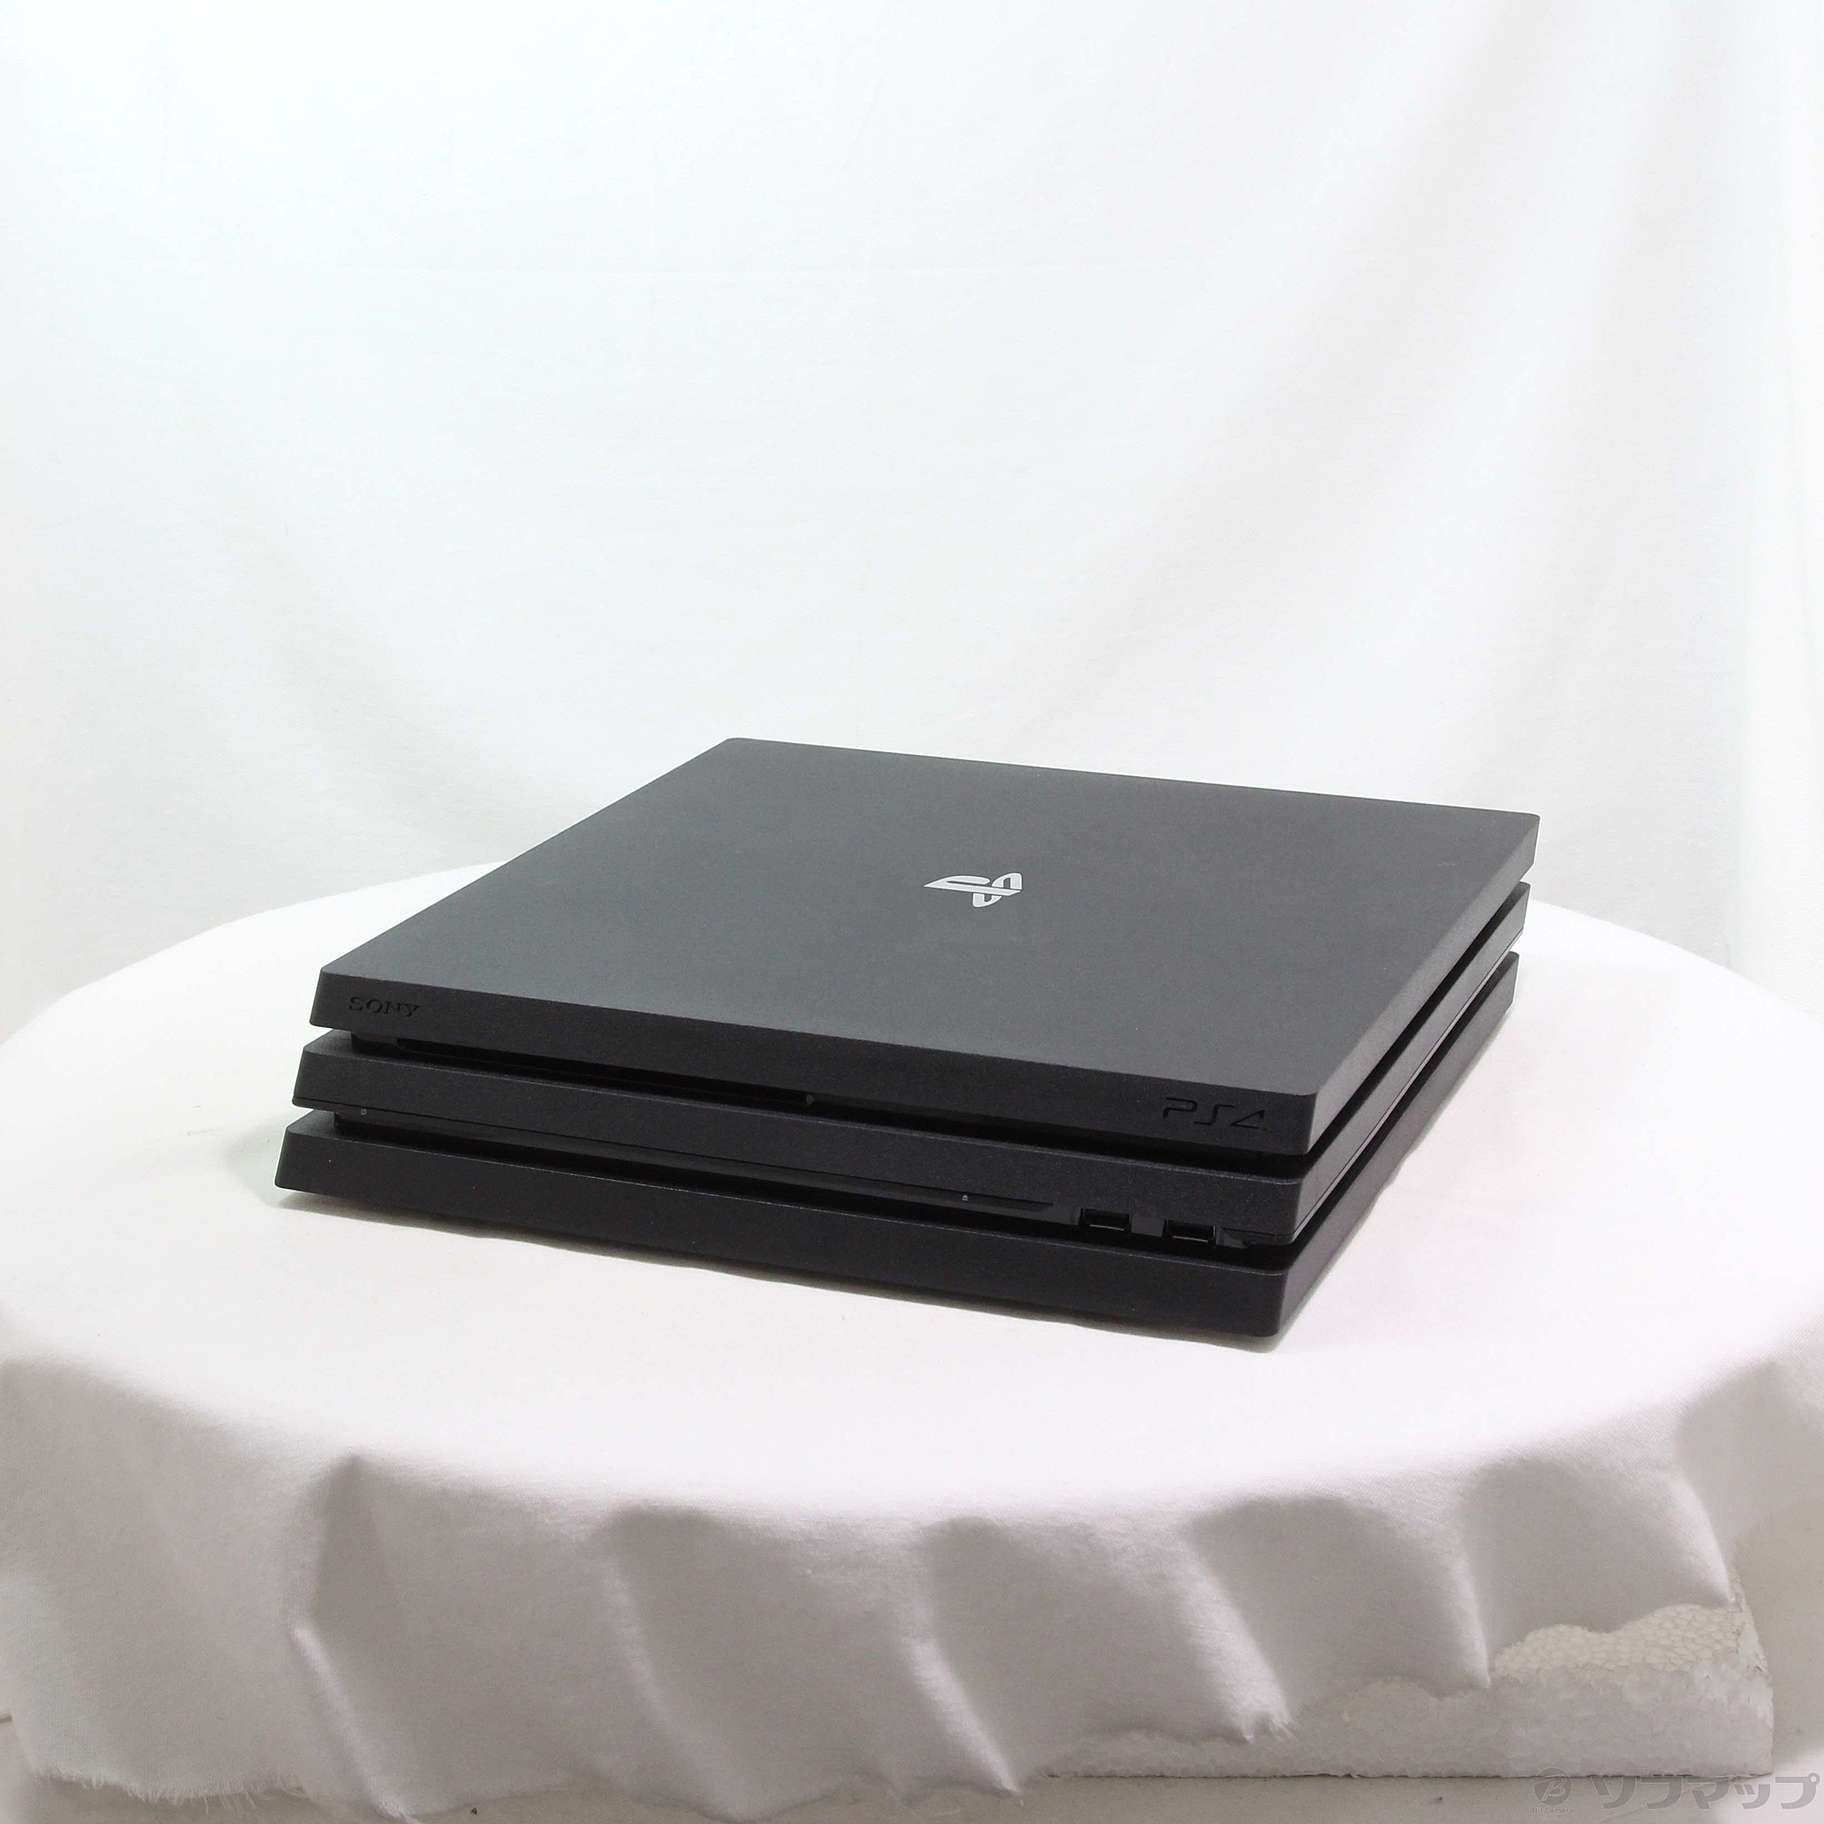 中古】PlayStation 4 Pro ジェット・ブラック 1TB CUH-7200BB01